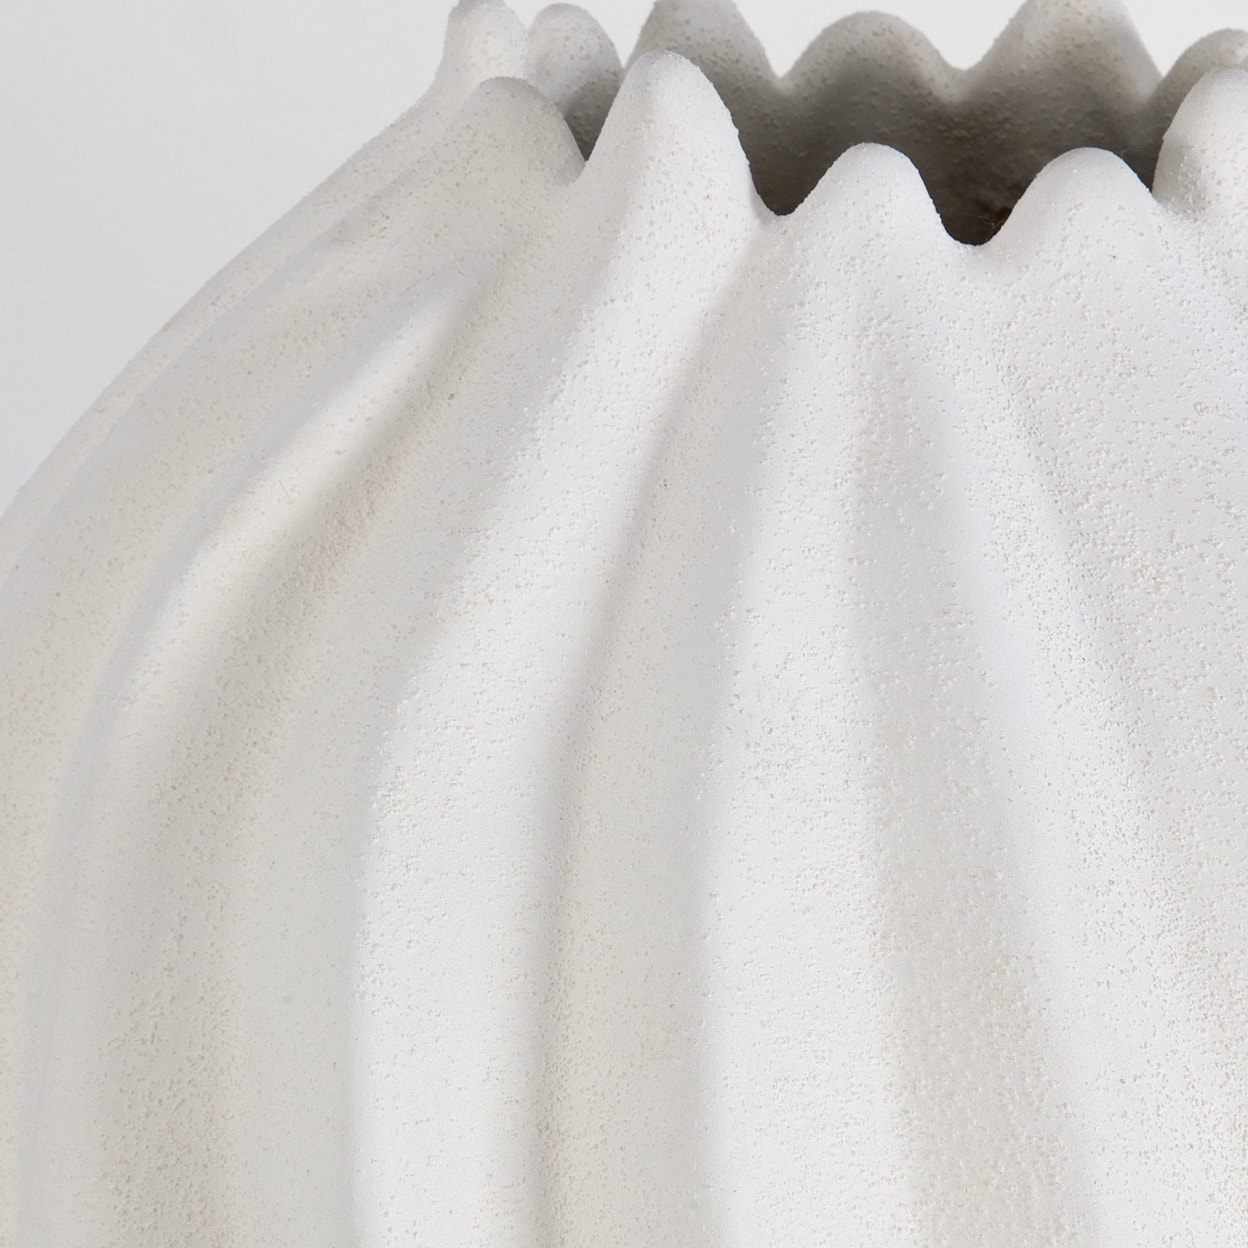 Uttermost Merritt Merritt White Floor Vase